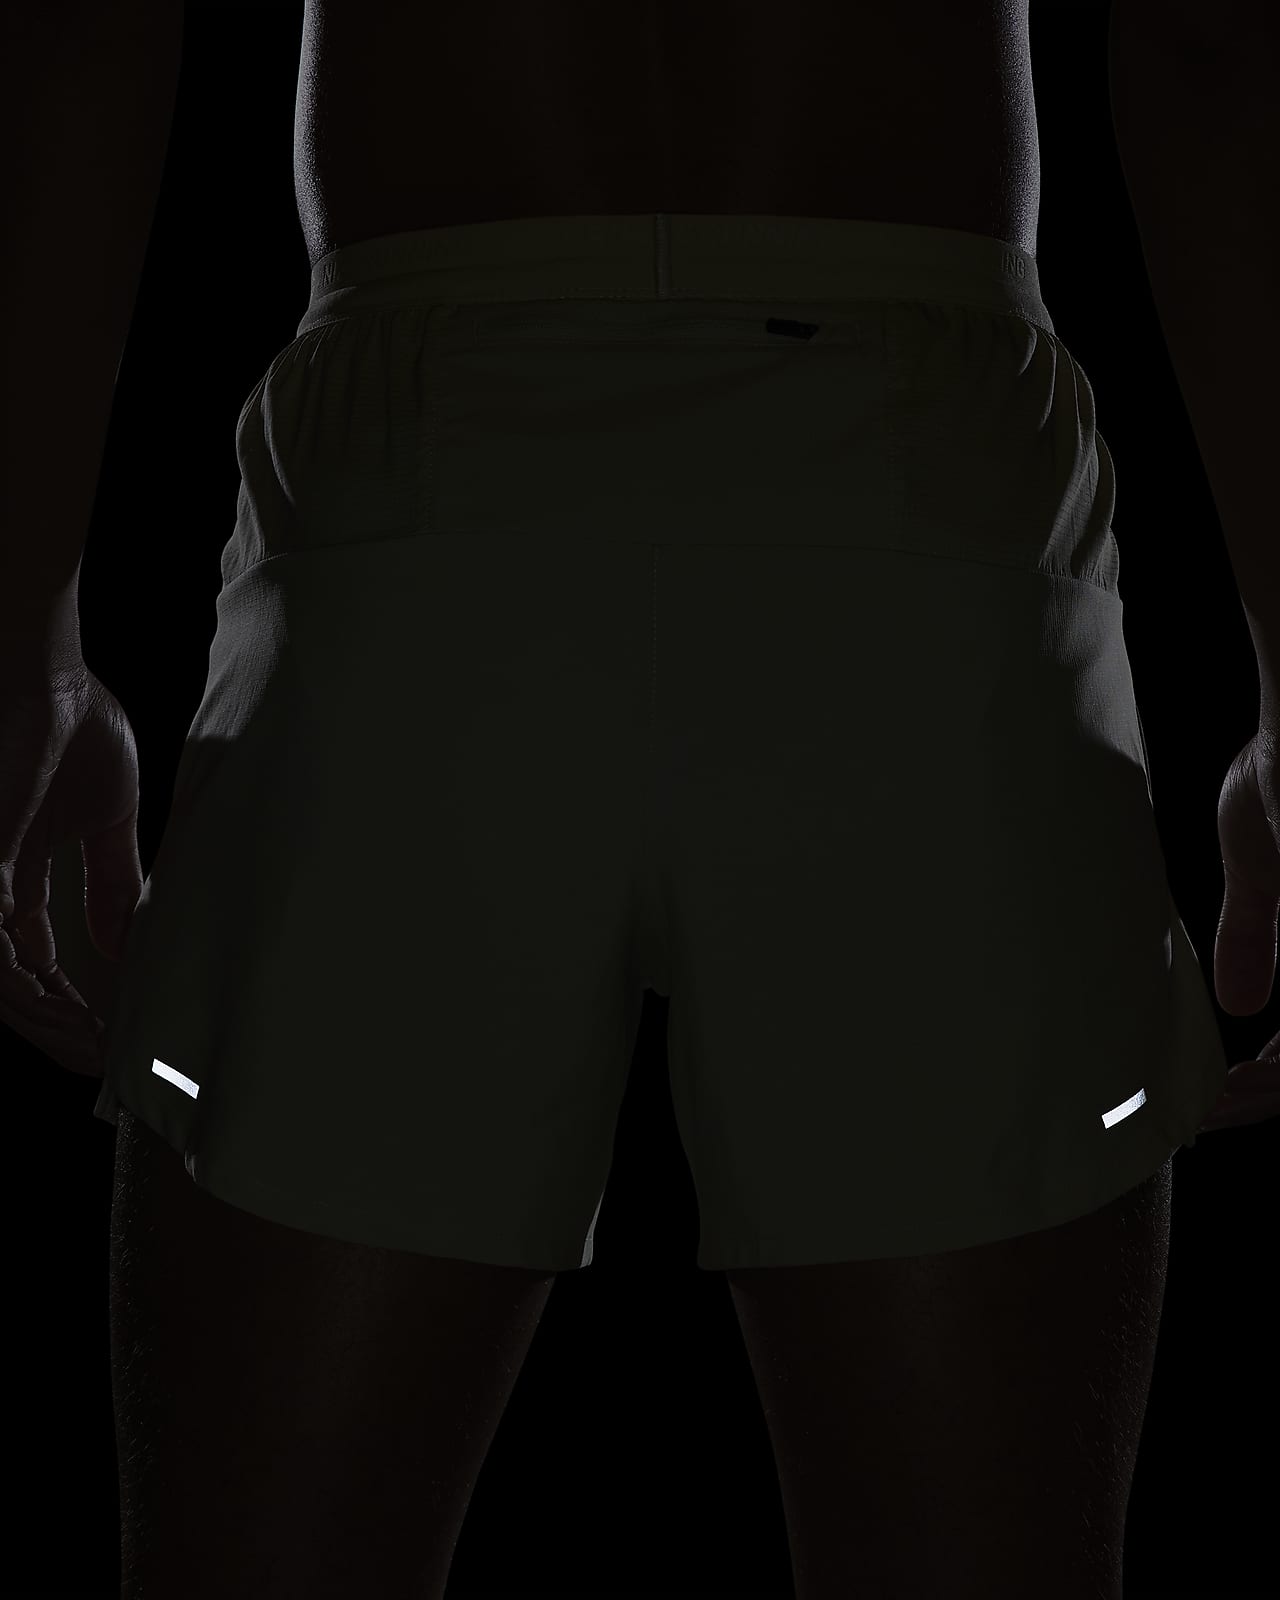 Short de running avec slip intégré Nike Flex Stride 13 cm pour Homme. Nike  LU